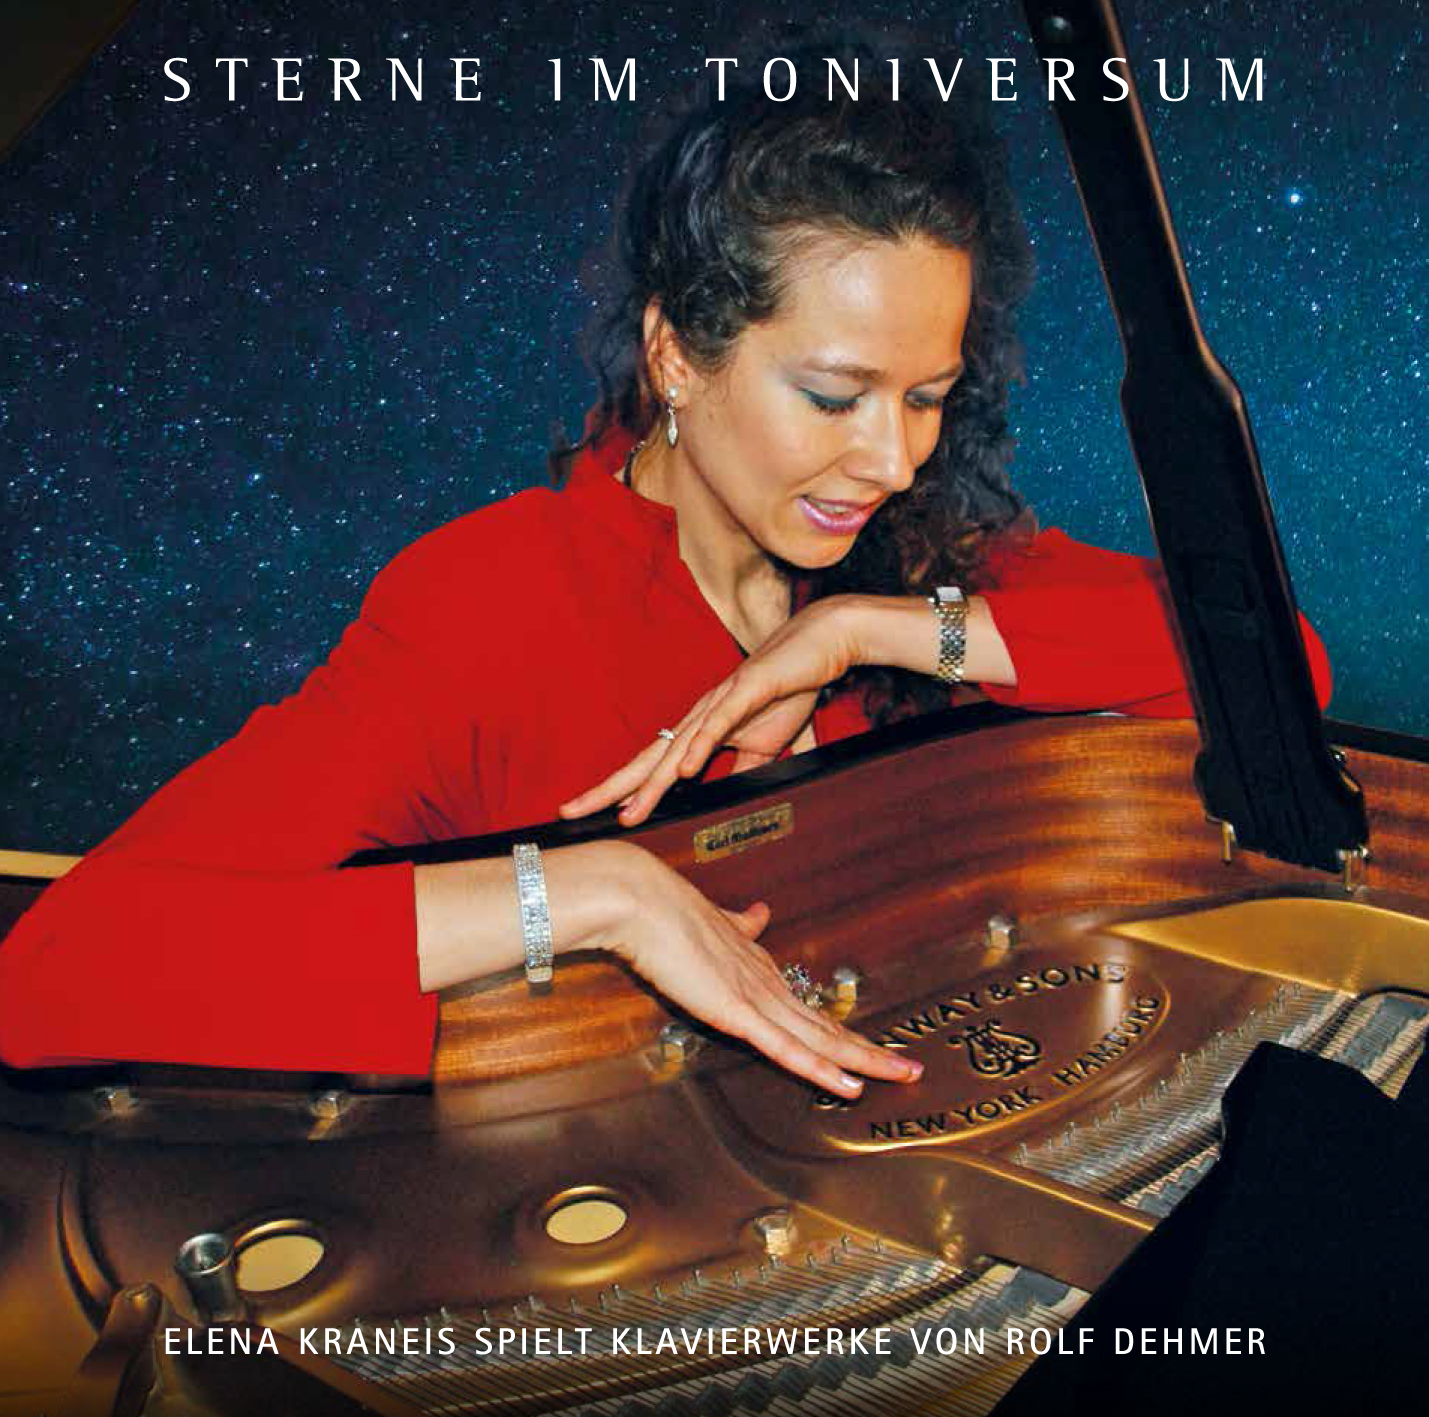 CD "Sterne im Toniversum ", Titelfoto: Günter Wirth